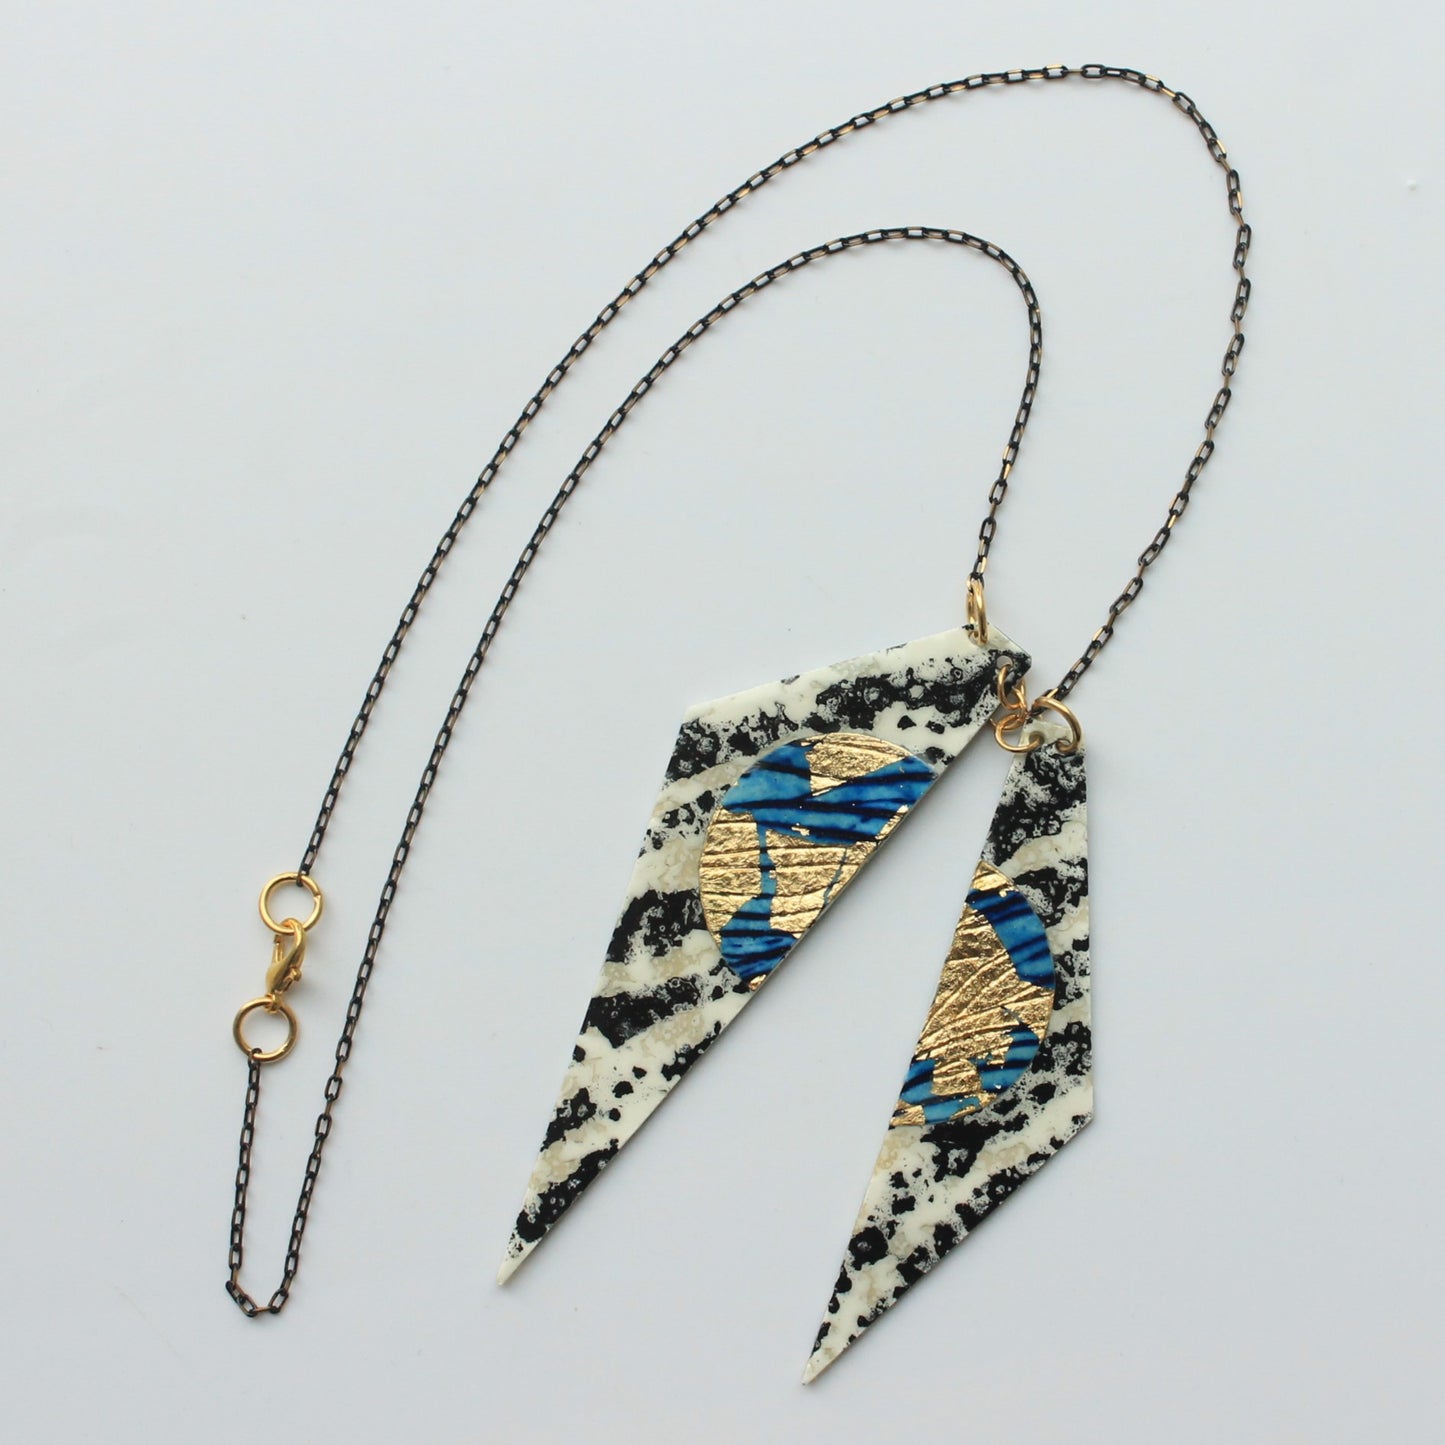 Zazu batik textile necklace in charcoal/blue/gold - Rothlu